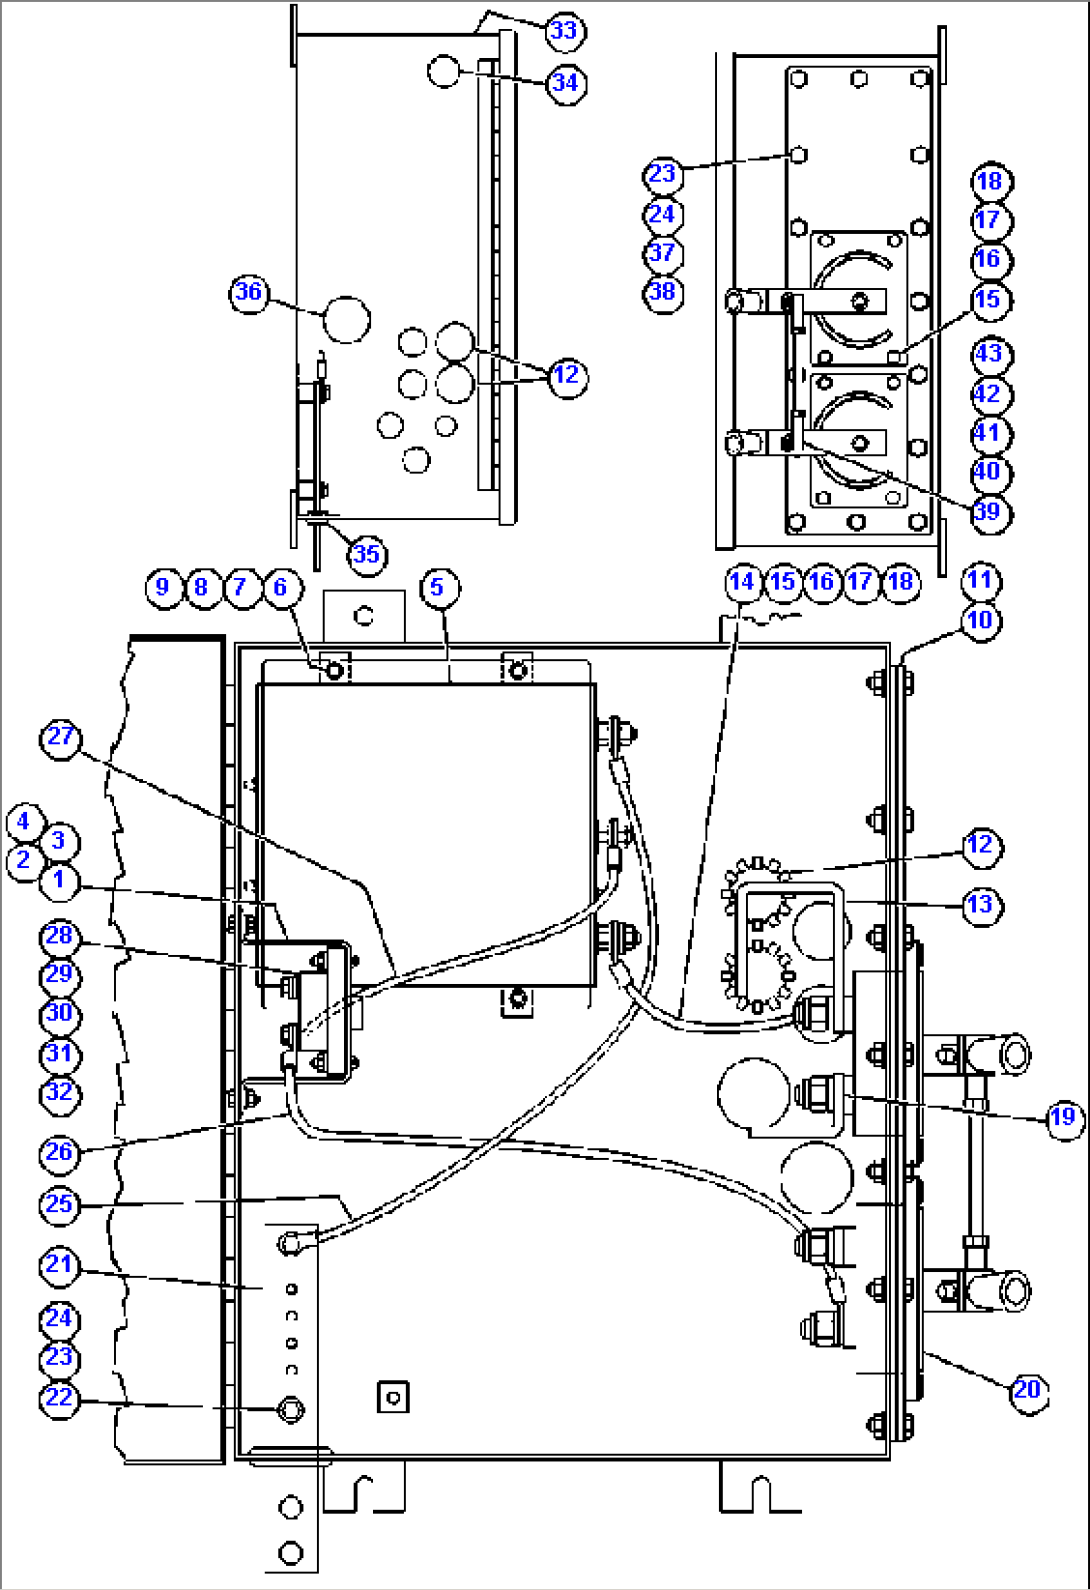 BATTERY EQUALIZER BOX ASSM - 5 (EJ5855)